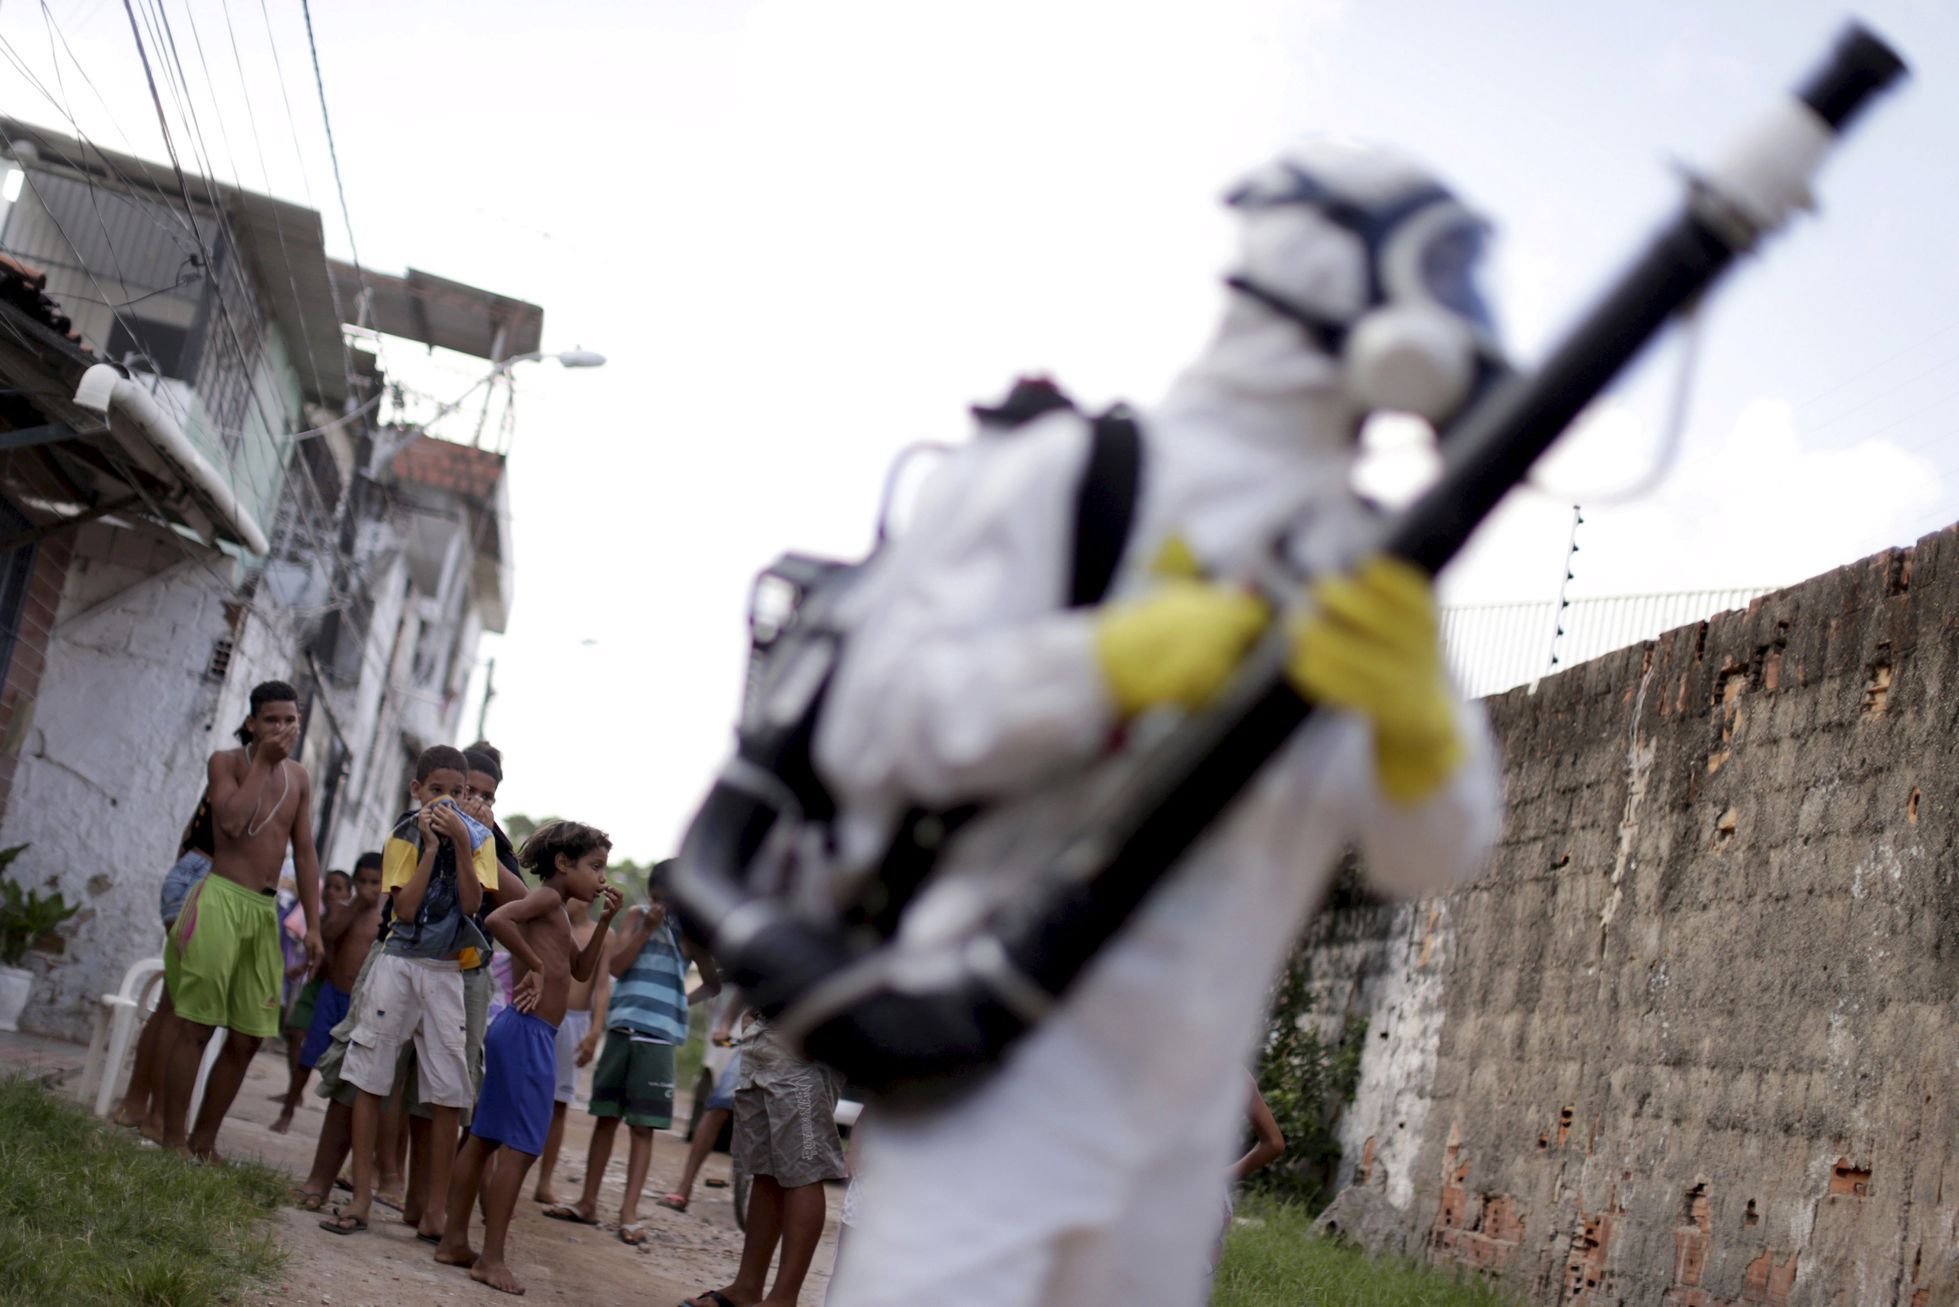 Recife - brazilská favela